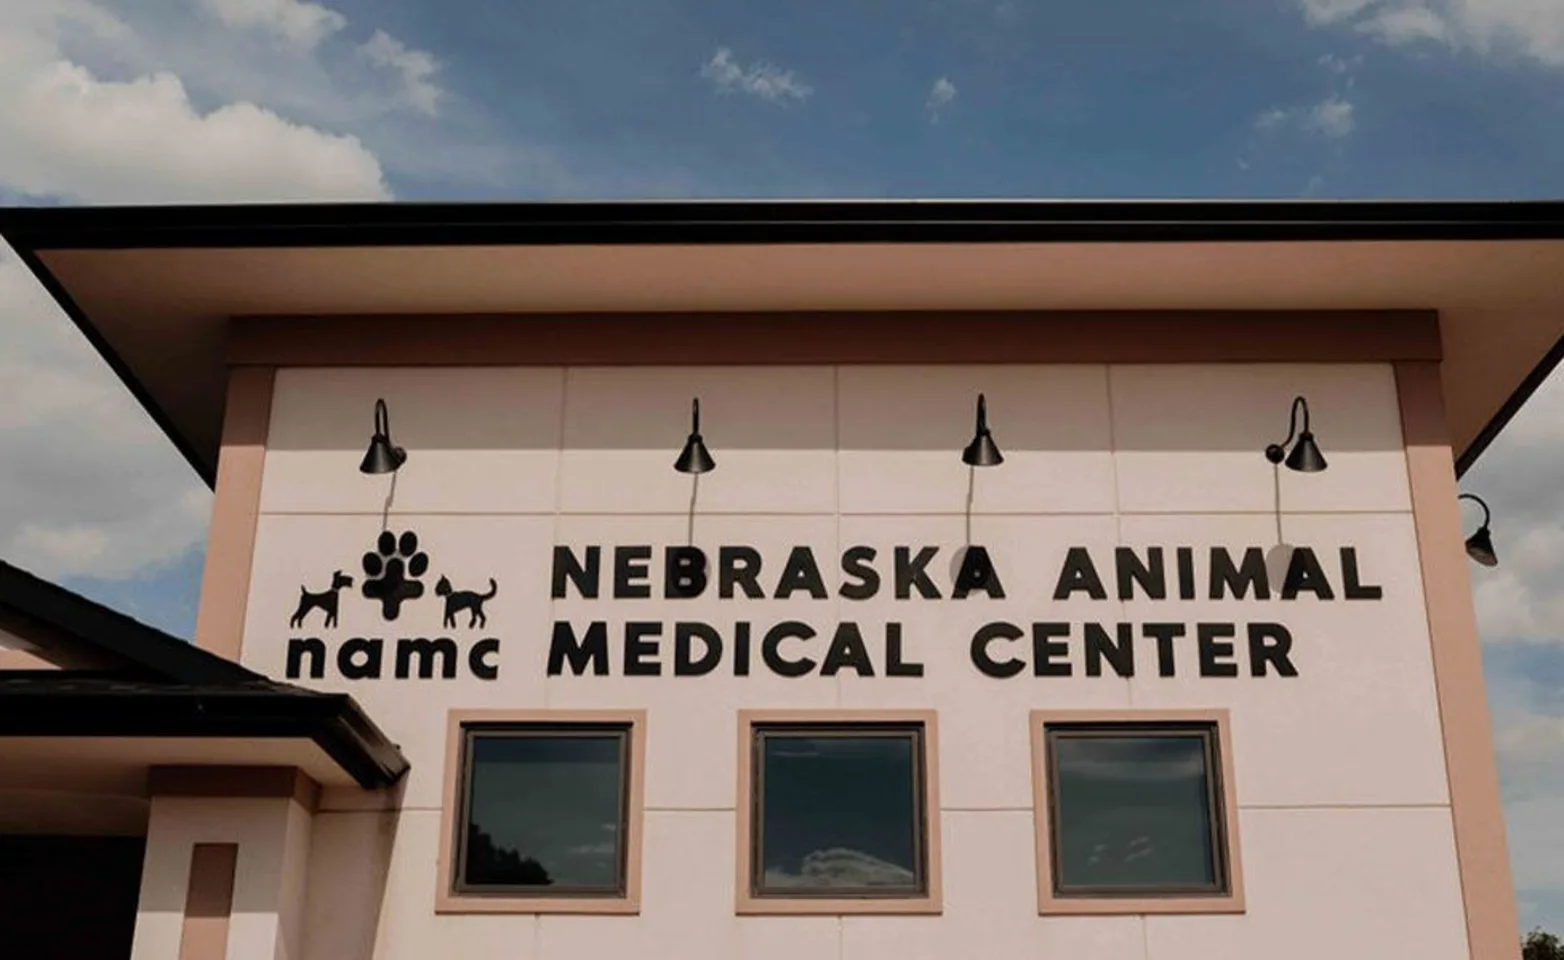 Nebraska Animal Medical Center logo outside.